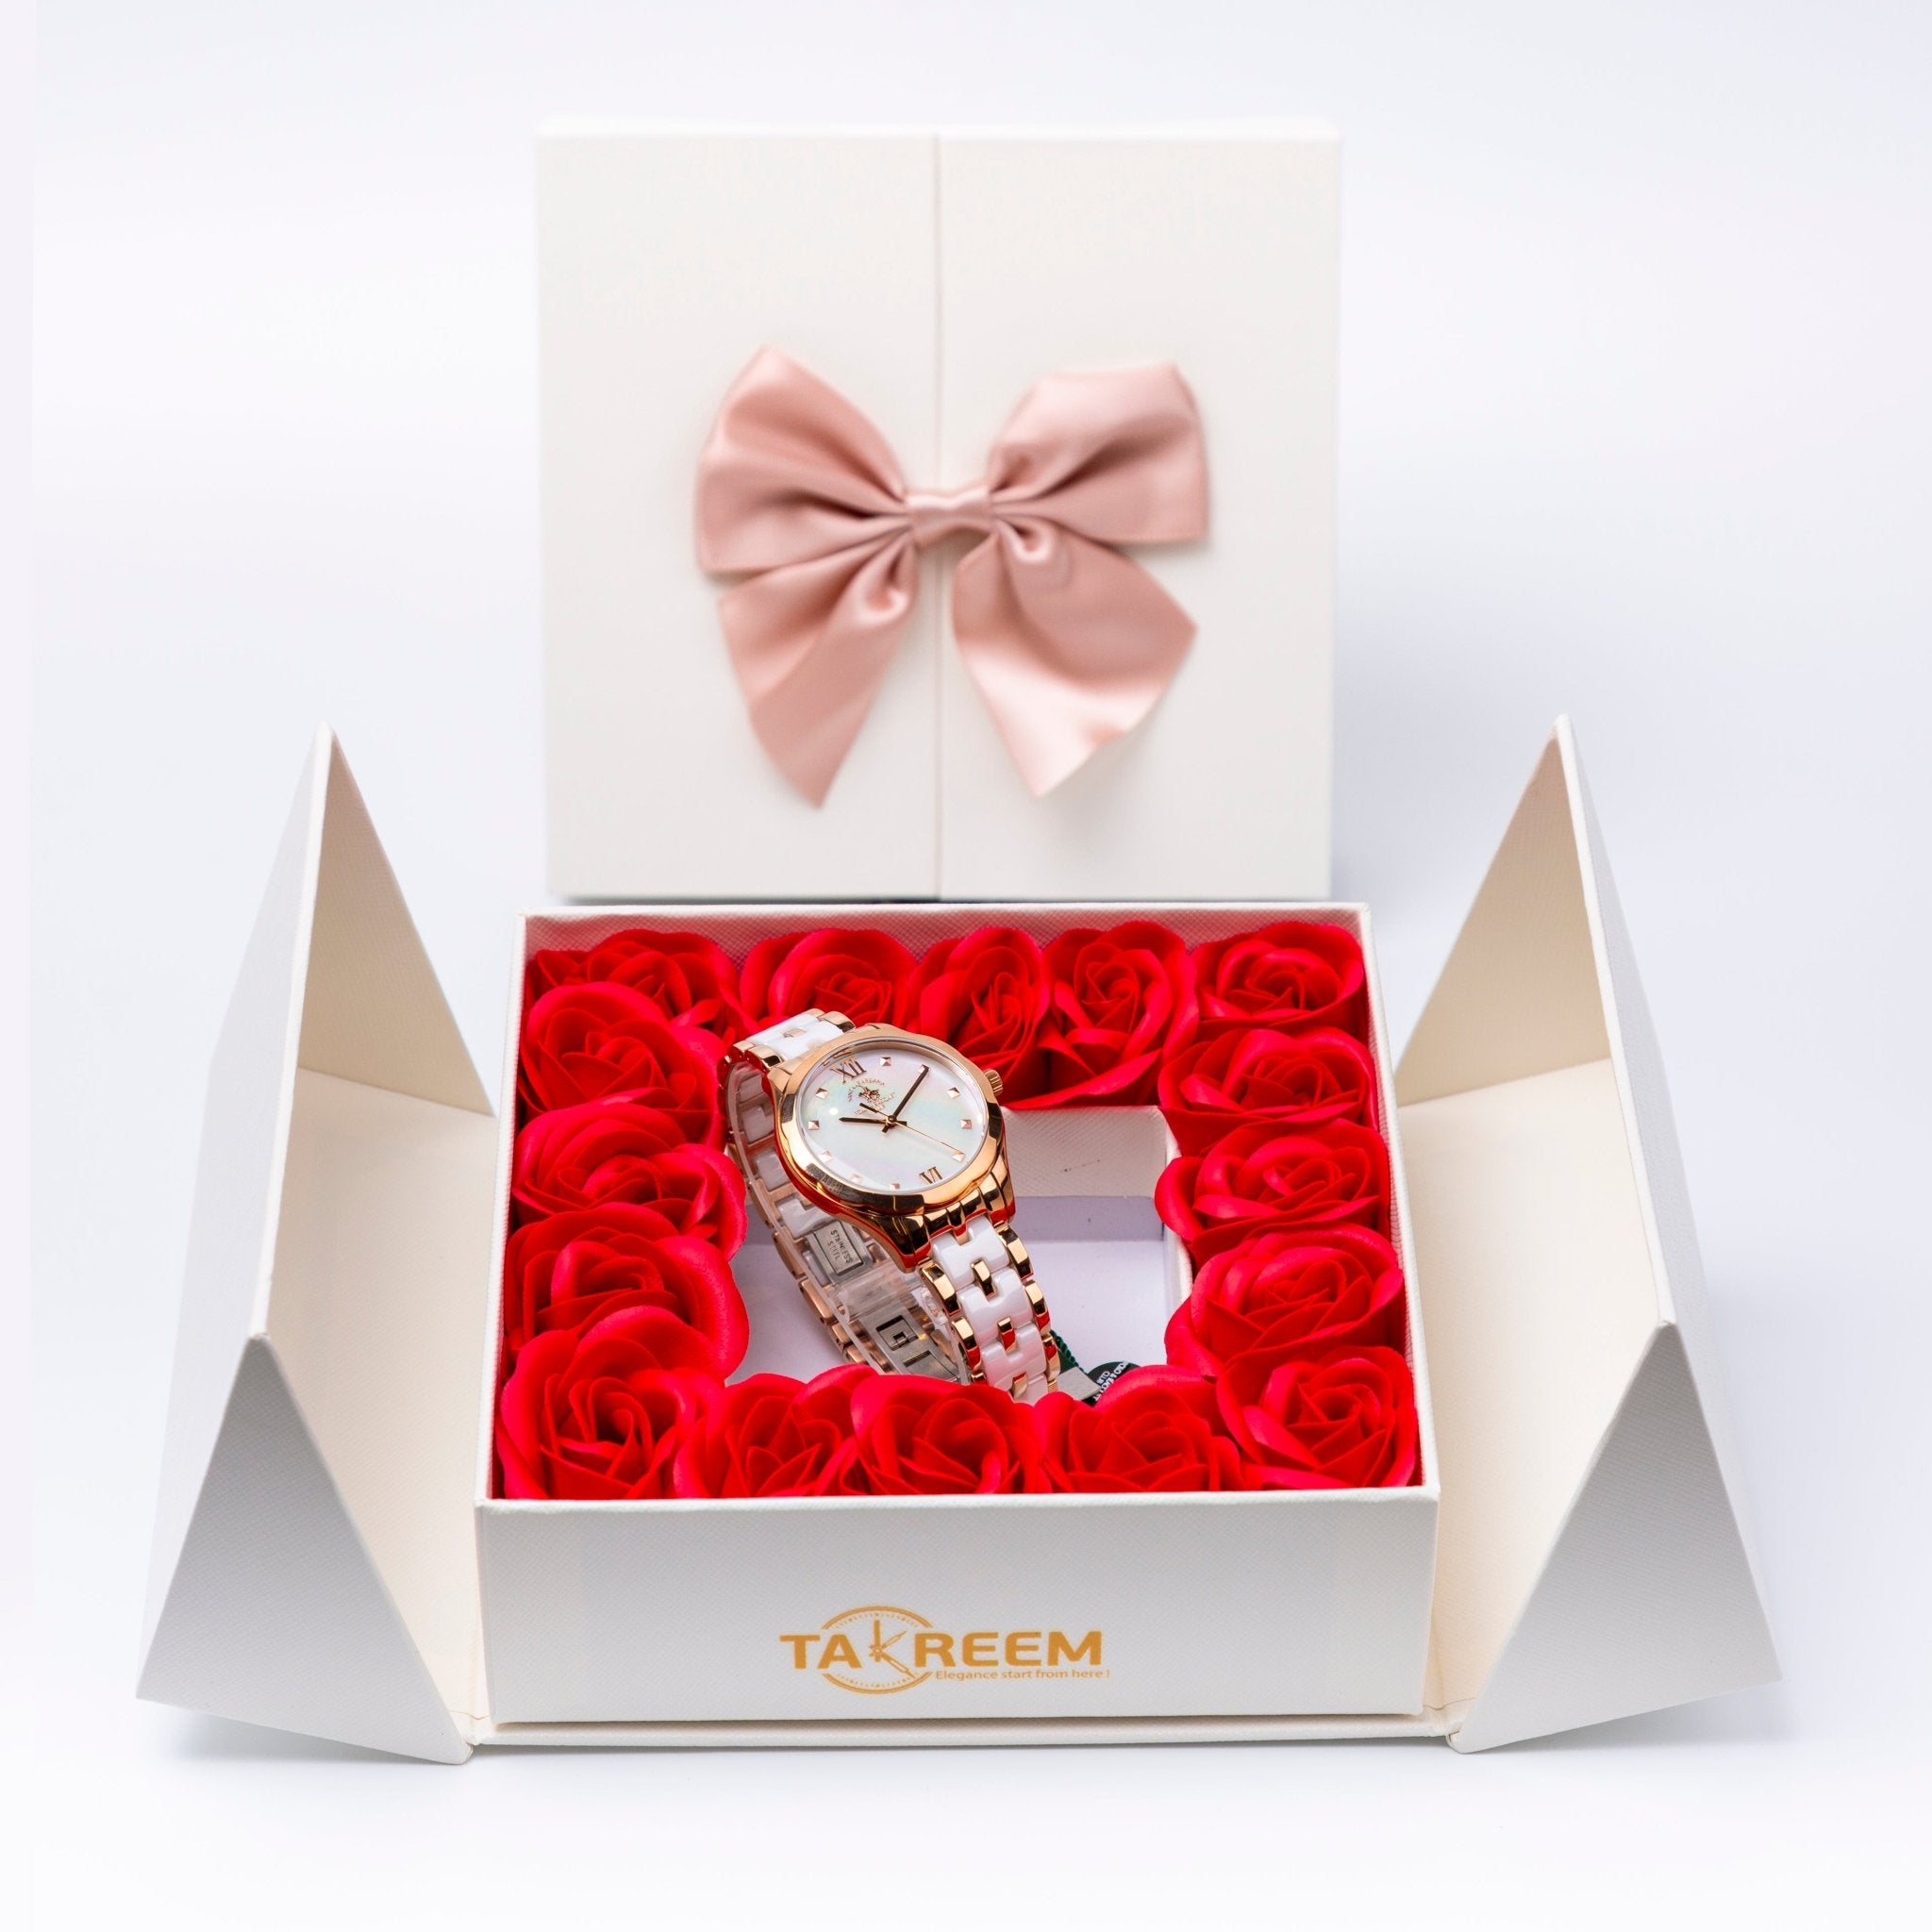 Flower Box - Gift For Women 29 - #shoFlower Box - Gift For Women 29p_name#Flower Box - Gift For Women 29Gift Boxes & TinsTakreemTakreem.joWomenWatchFlower Box - Gift For Women 29 - Takreem.jo